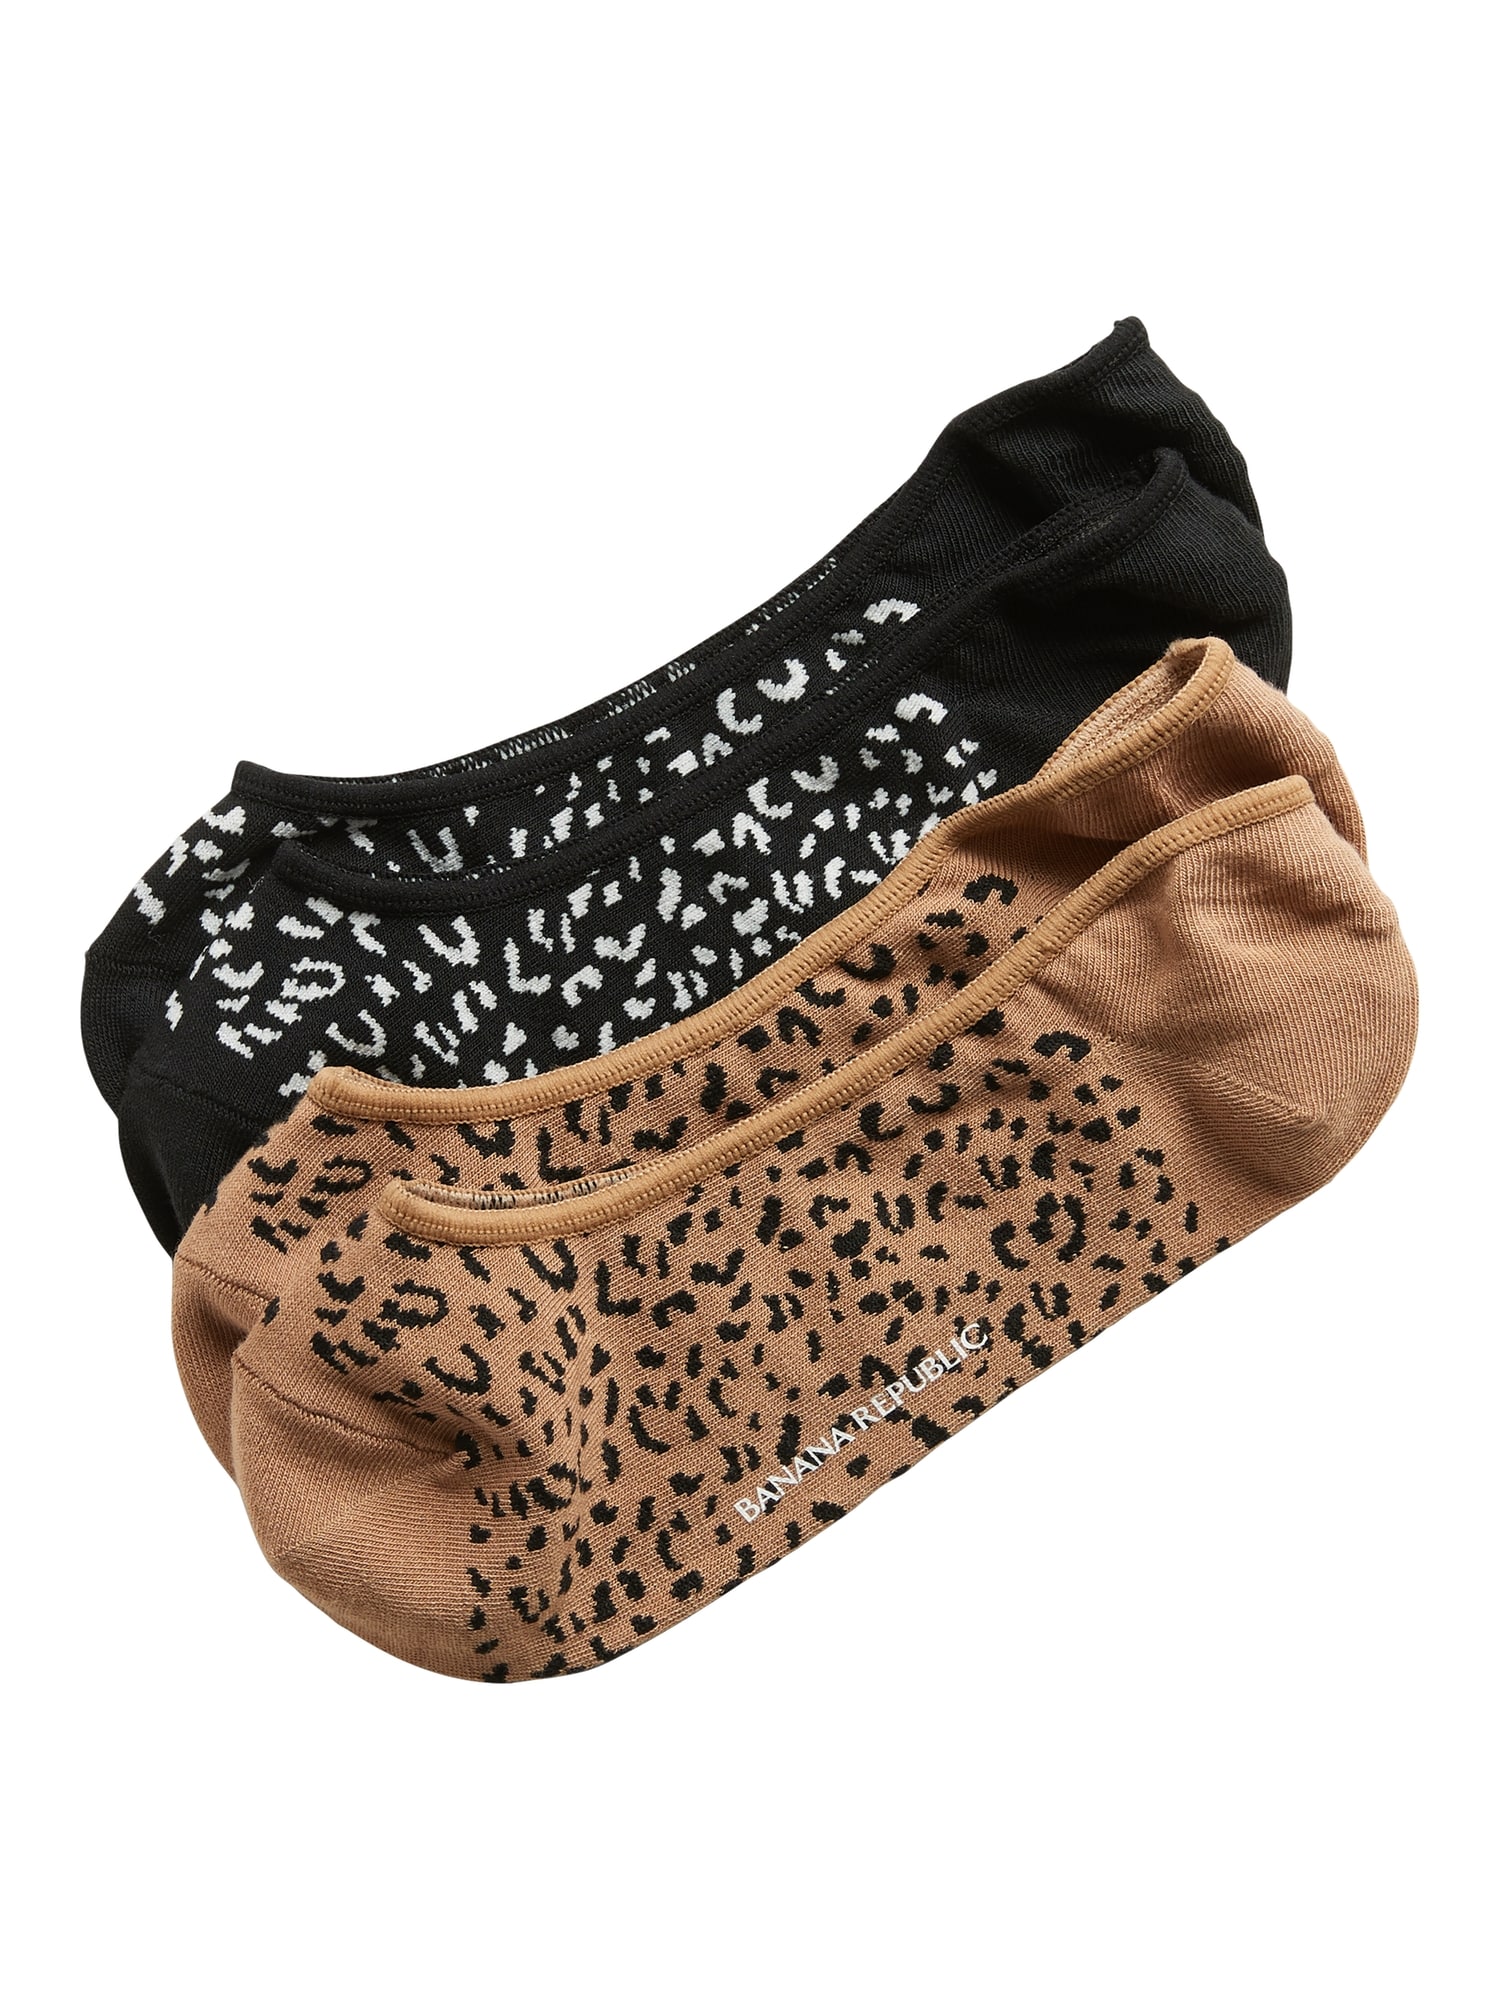 Cheetah Liner Sock 2-Pack